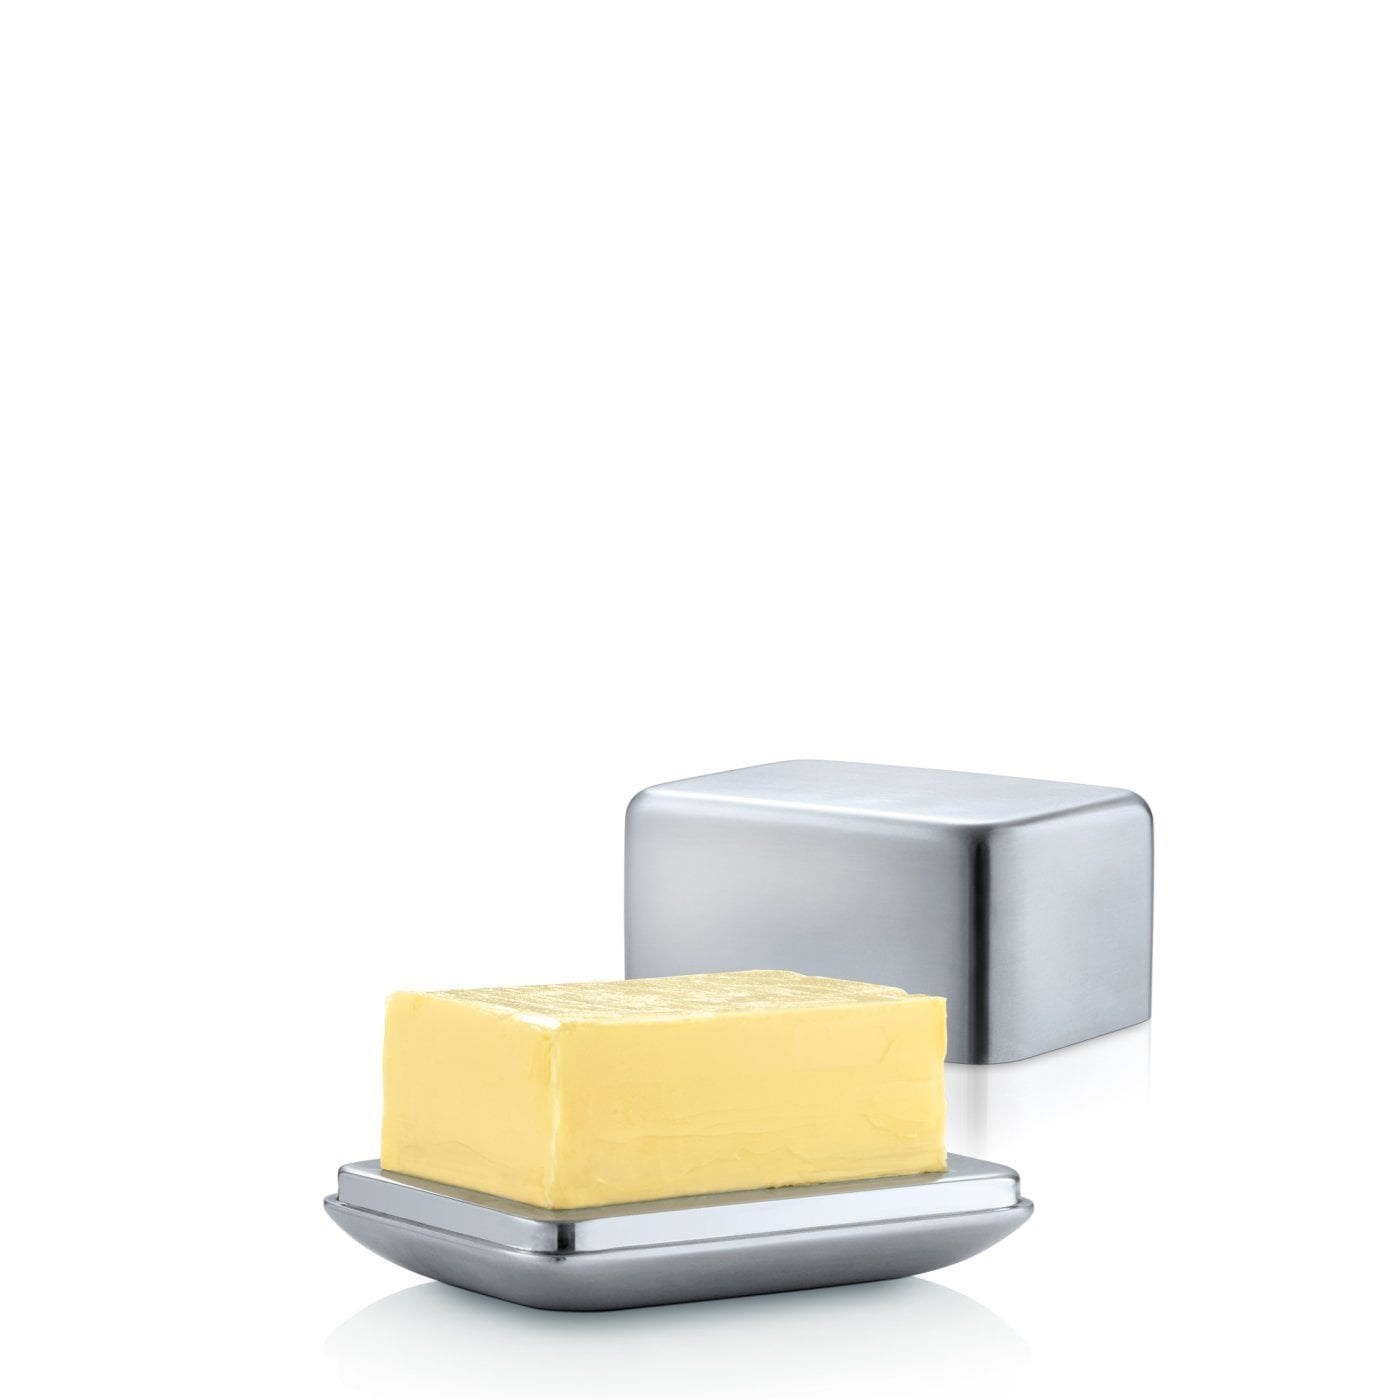 Obrázek z Dóza na máslo 250g BASIC 